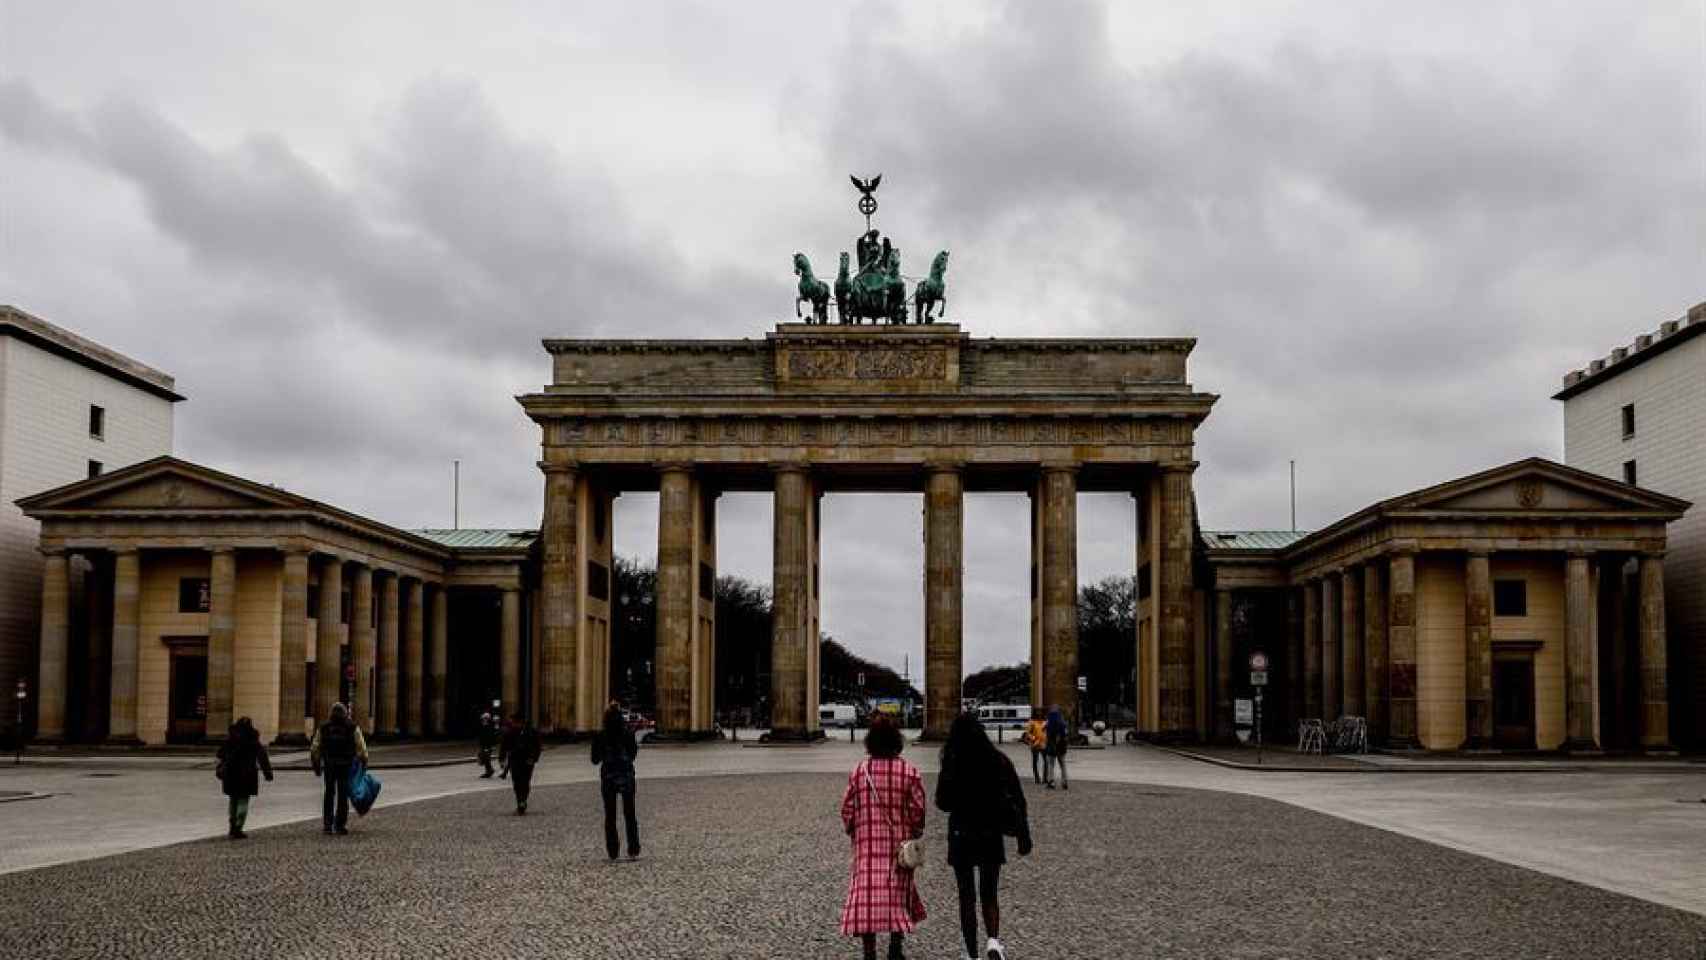 Alemania ha endurecido su confinamiento de cara a la Semana Santa, aunque no afecta las restricciones de viaje.